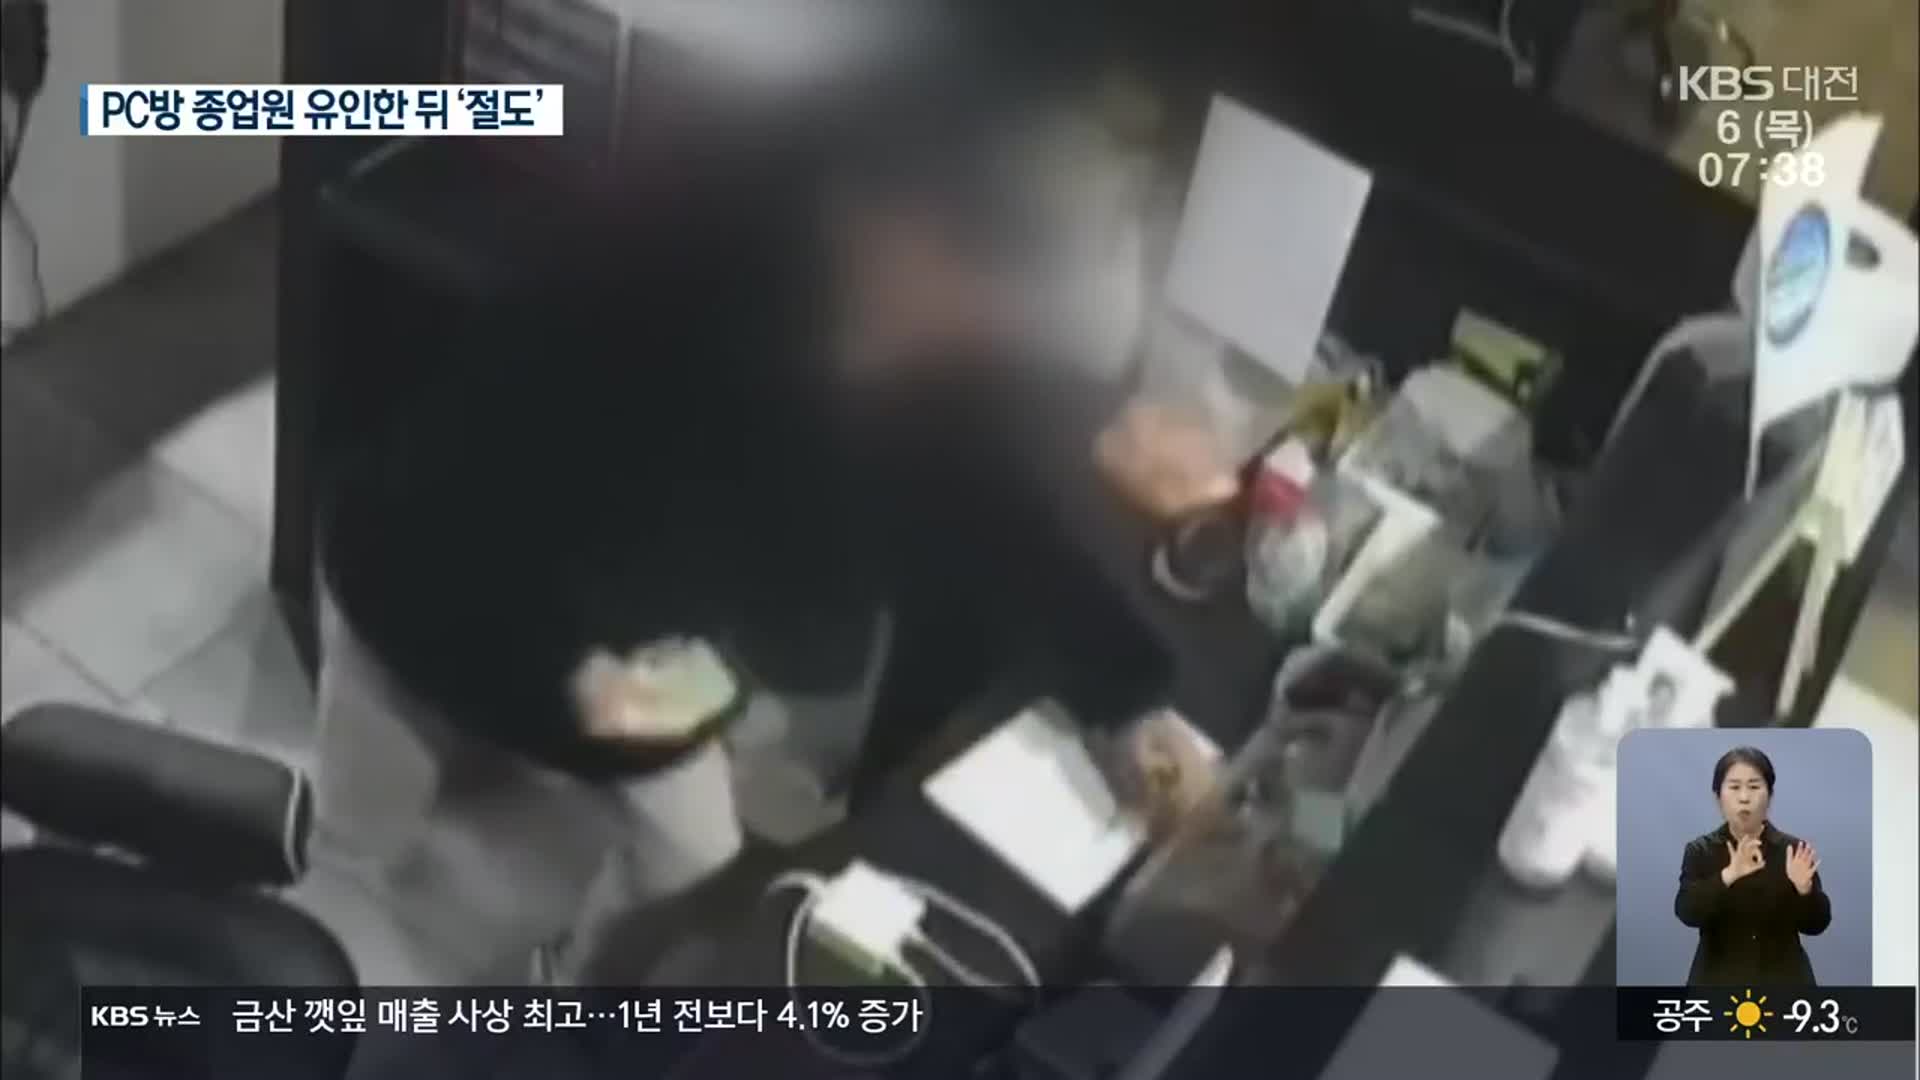 “화장실 막혔다”며 직원 유인…PC방 노린 절도범 경찰 수사